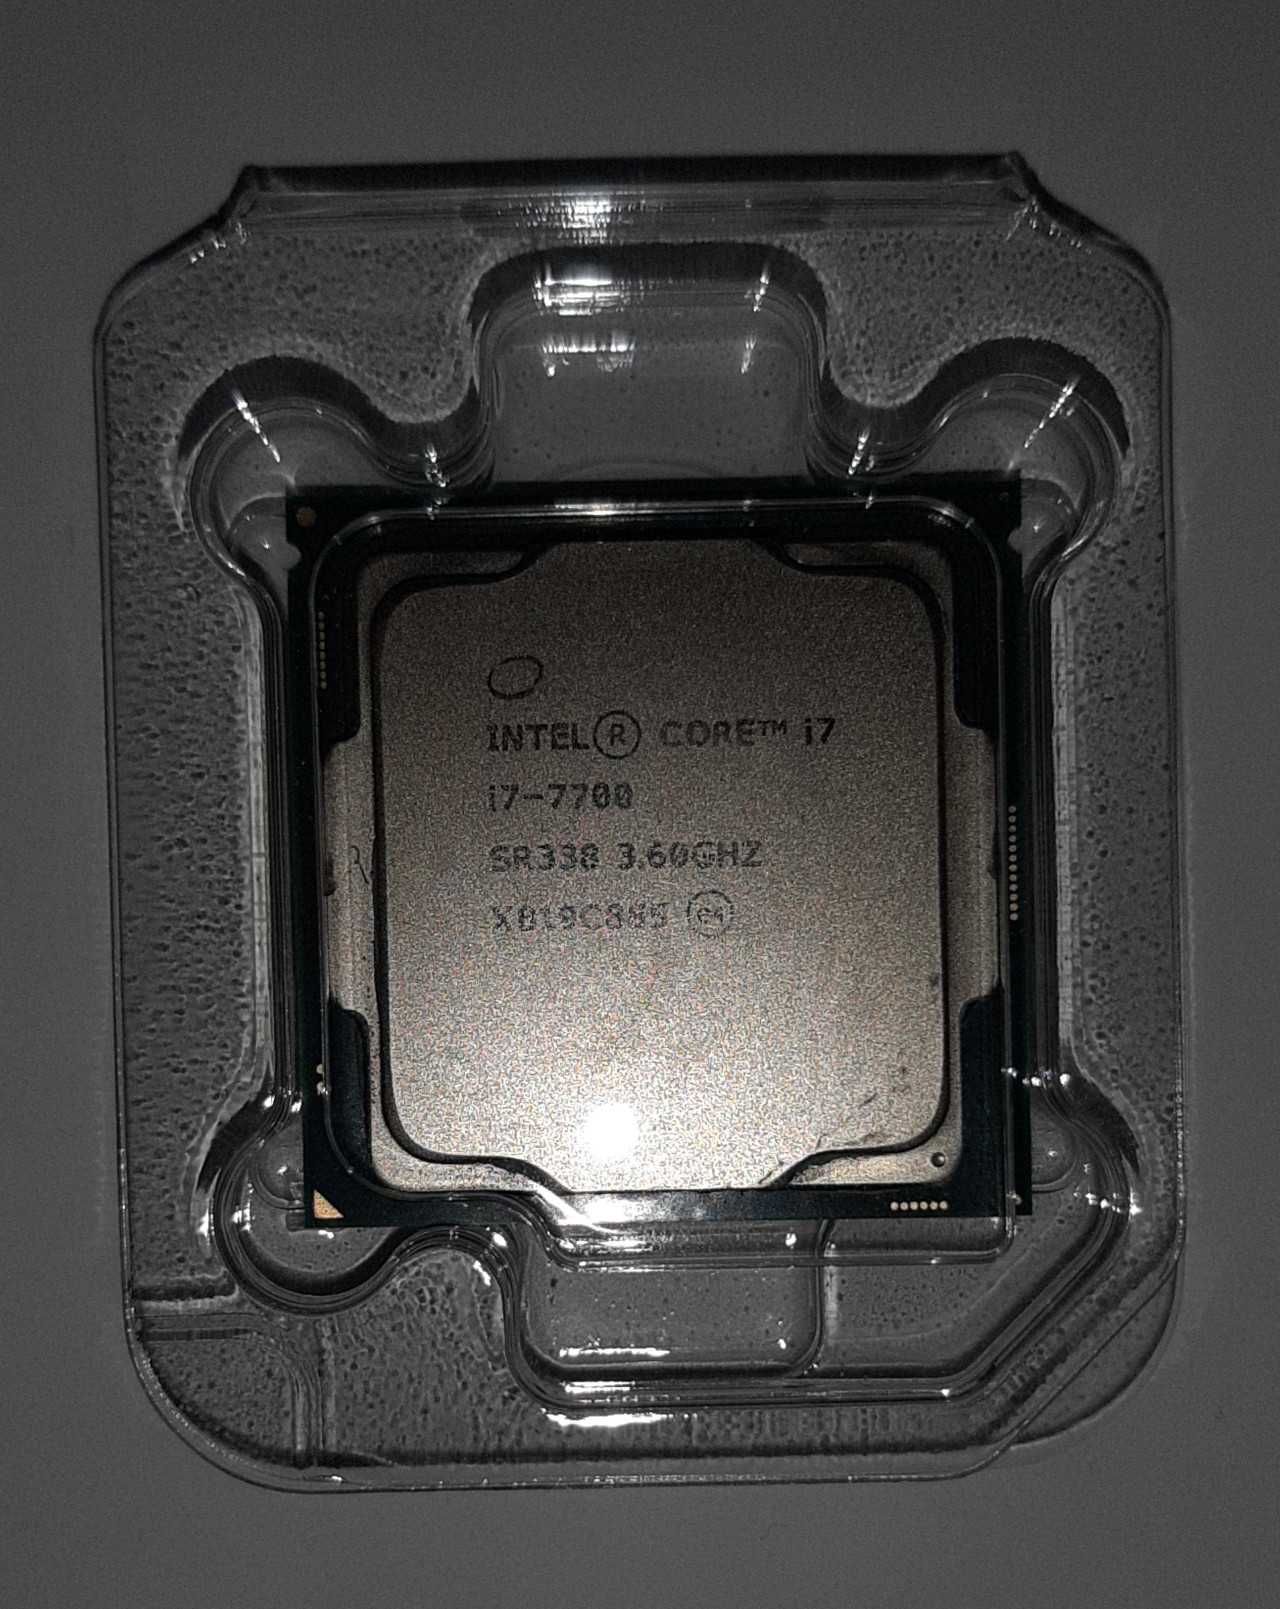 Procesor Intel i7-7700 + Cooler Intel & pasta termala Noctua NT-H1